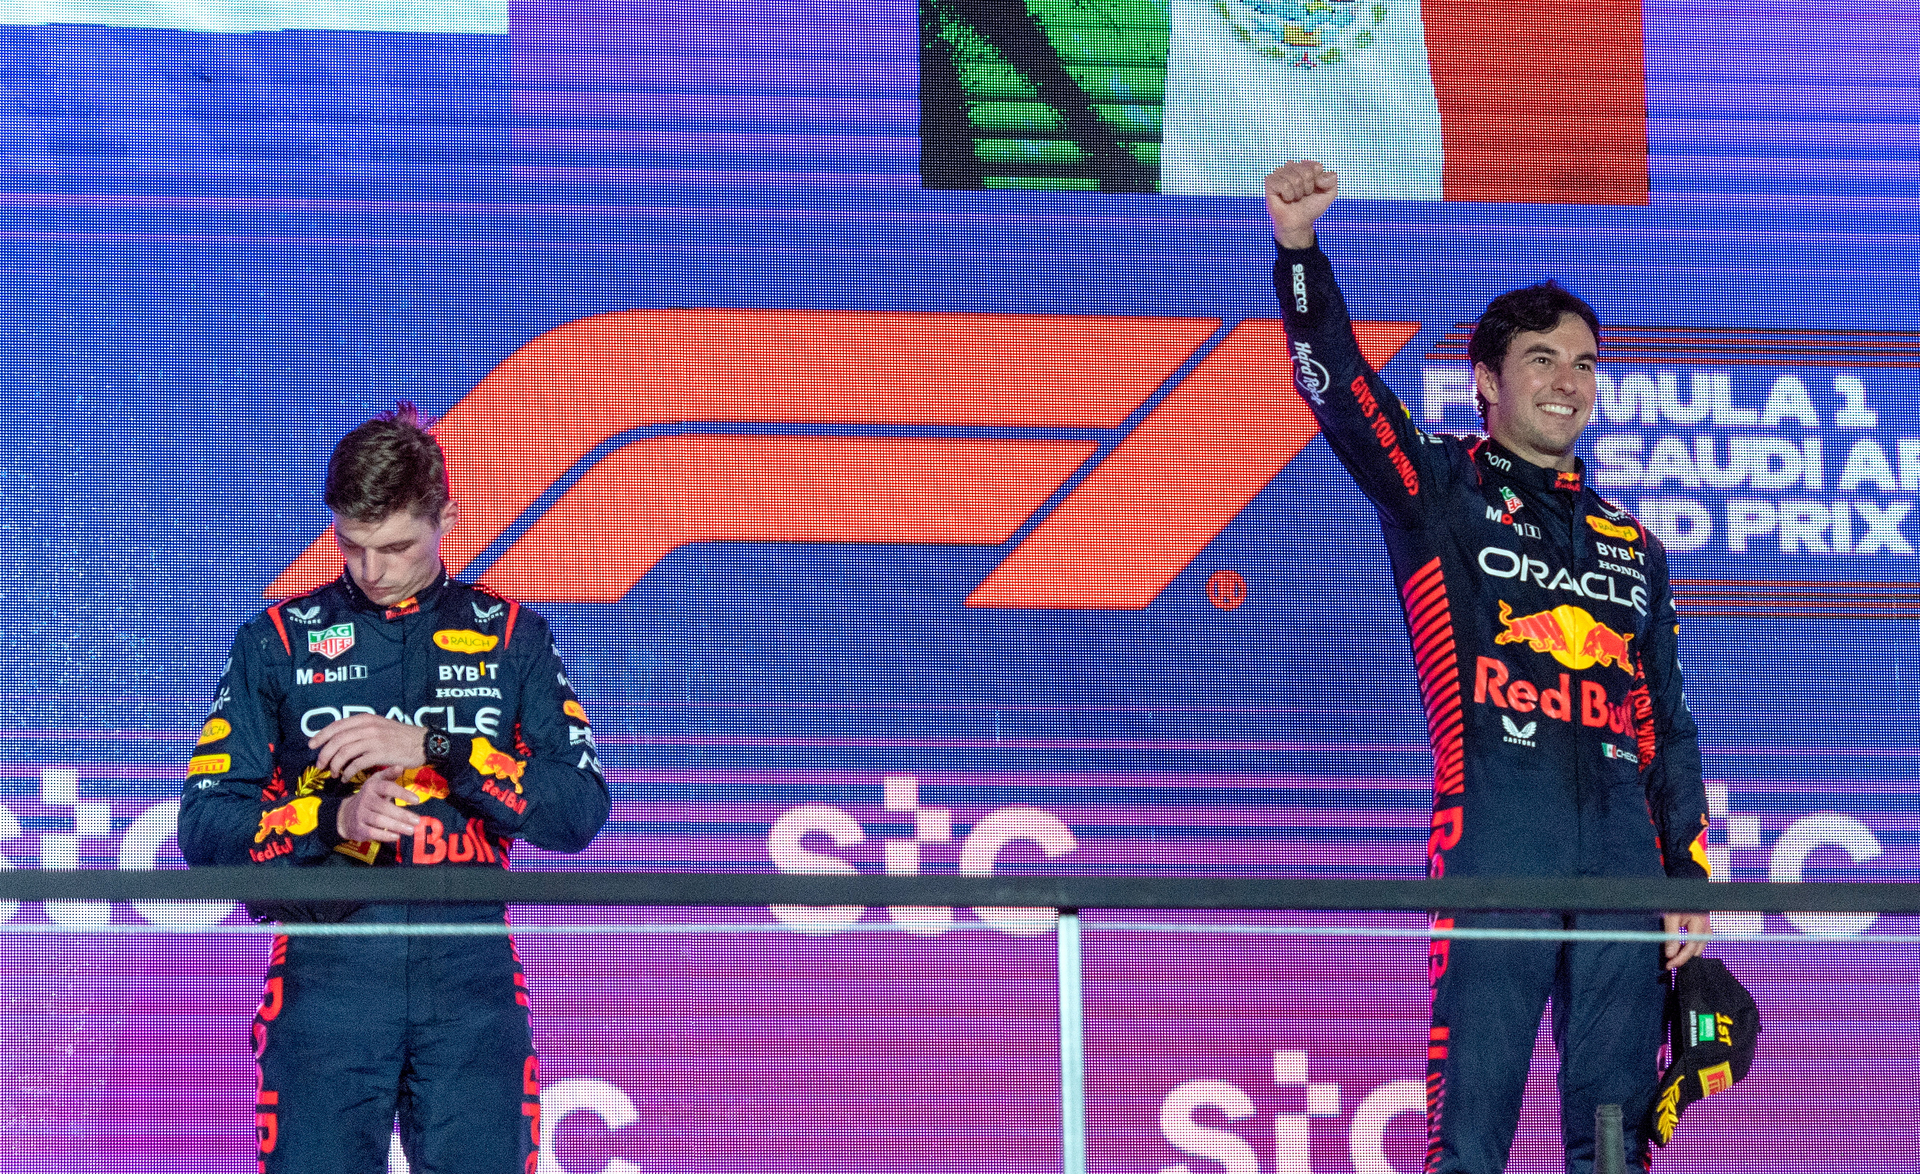 Los pilotos de la escudería Red Bull en el podio tras terminar Checo Pérez en el primer puesto y Max Verstappen en segundo; Fernando Alonso fue el tercero. (FOTO: ARCHIVO)